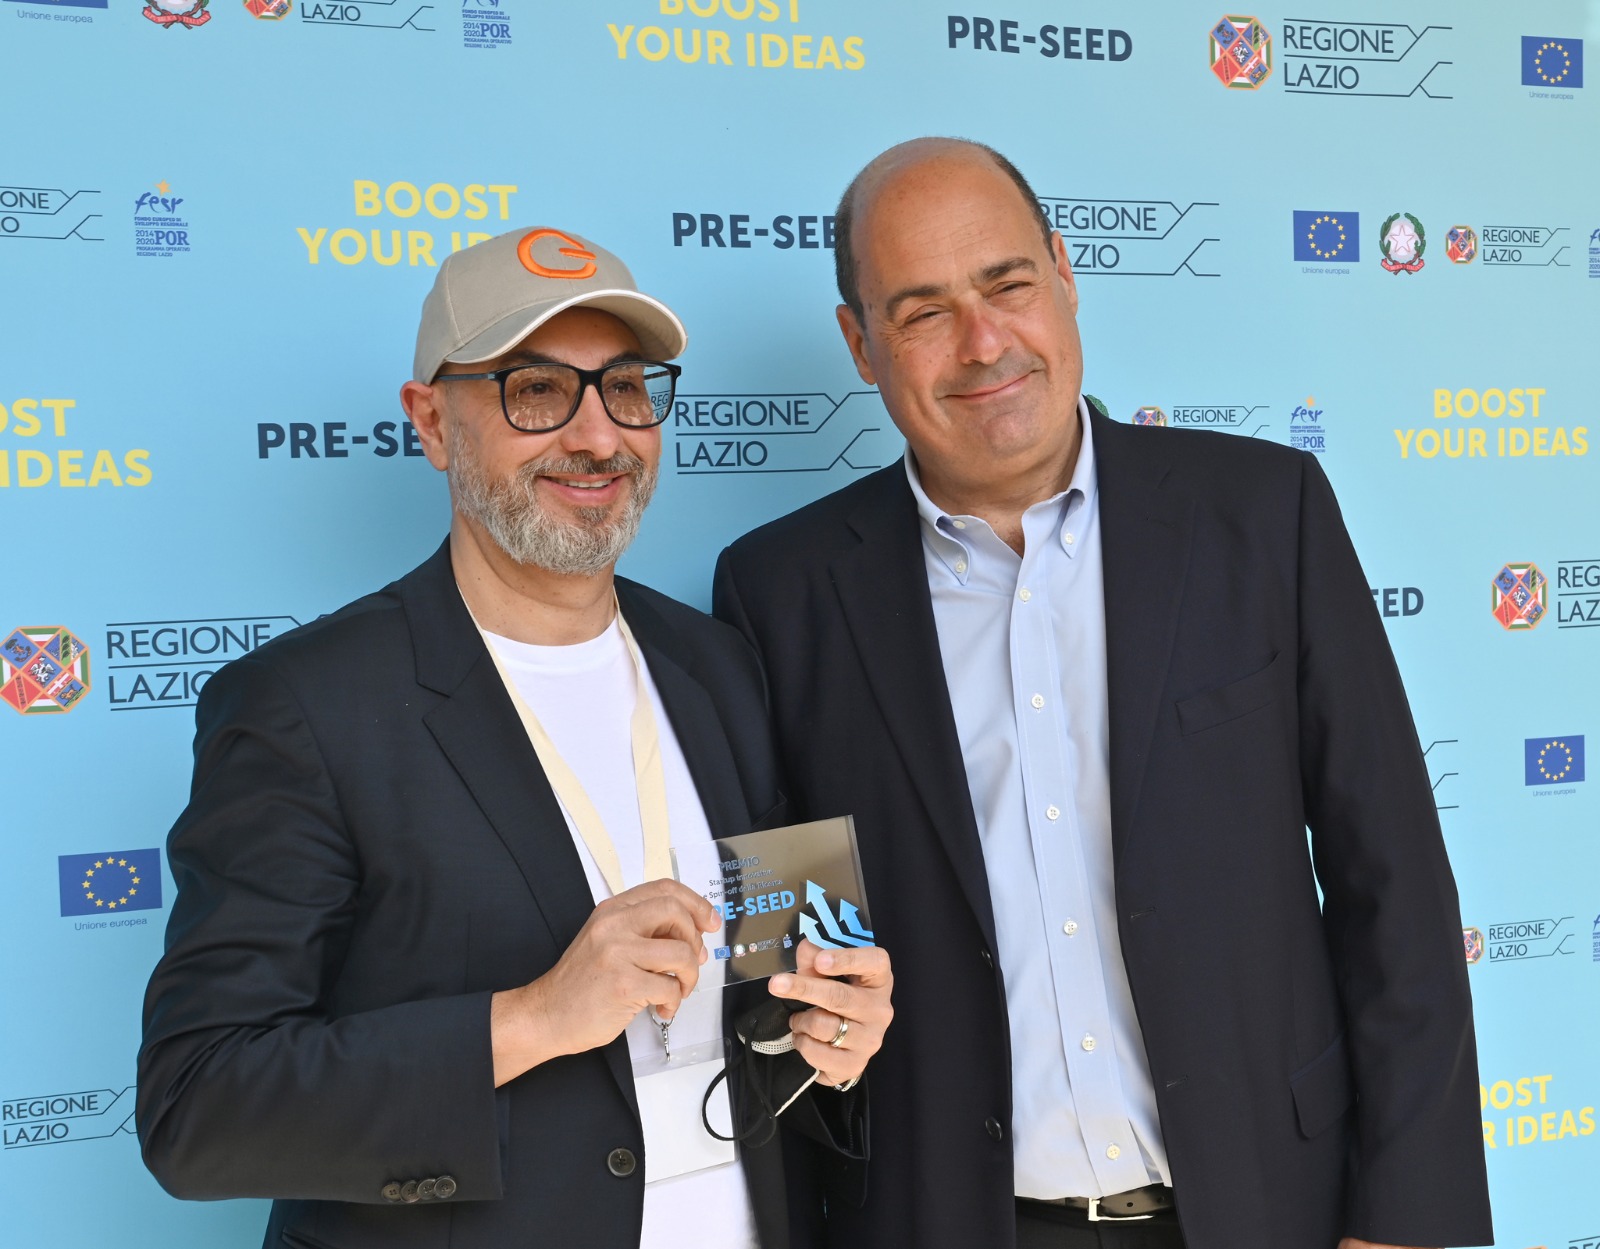 Il Ceo di Gesthome Armidoro dell'Elce con il presidente della regione Lazio Zingaretti durante la premiazione